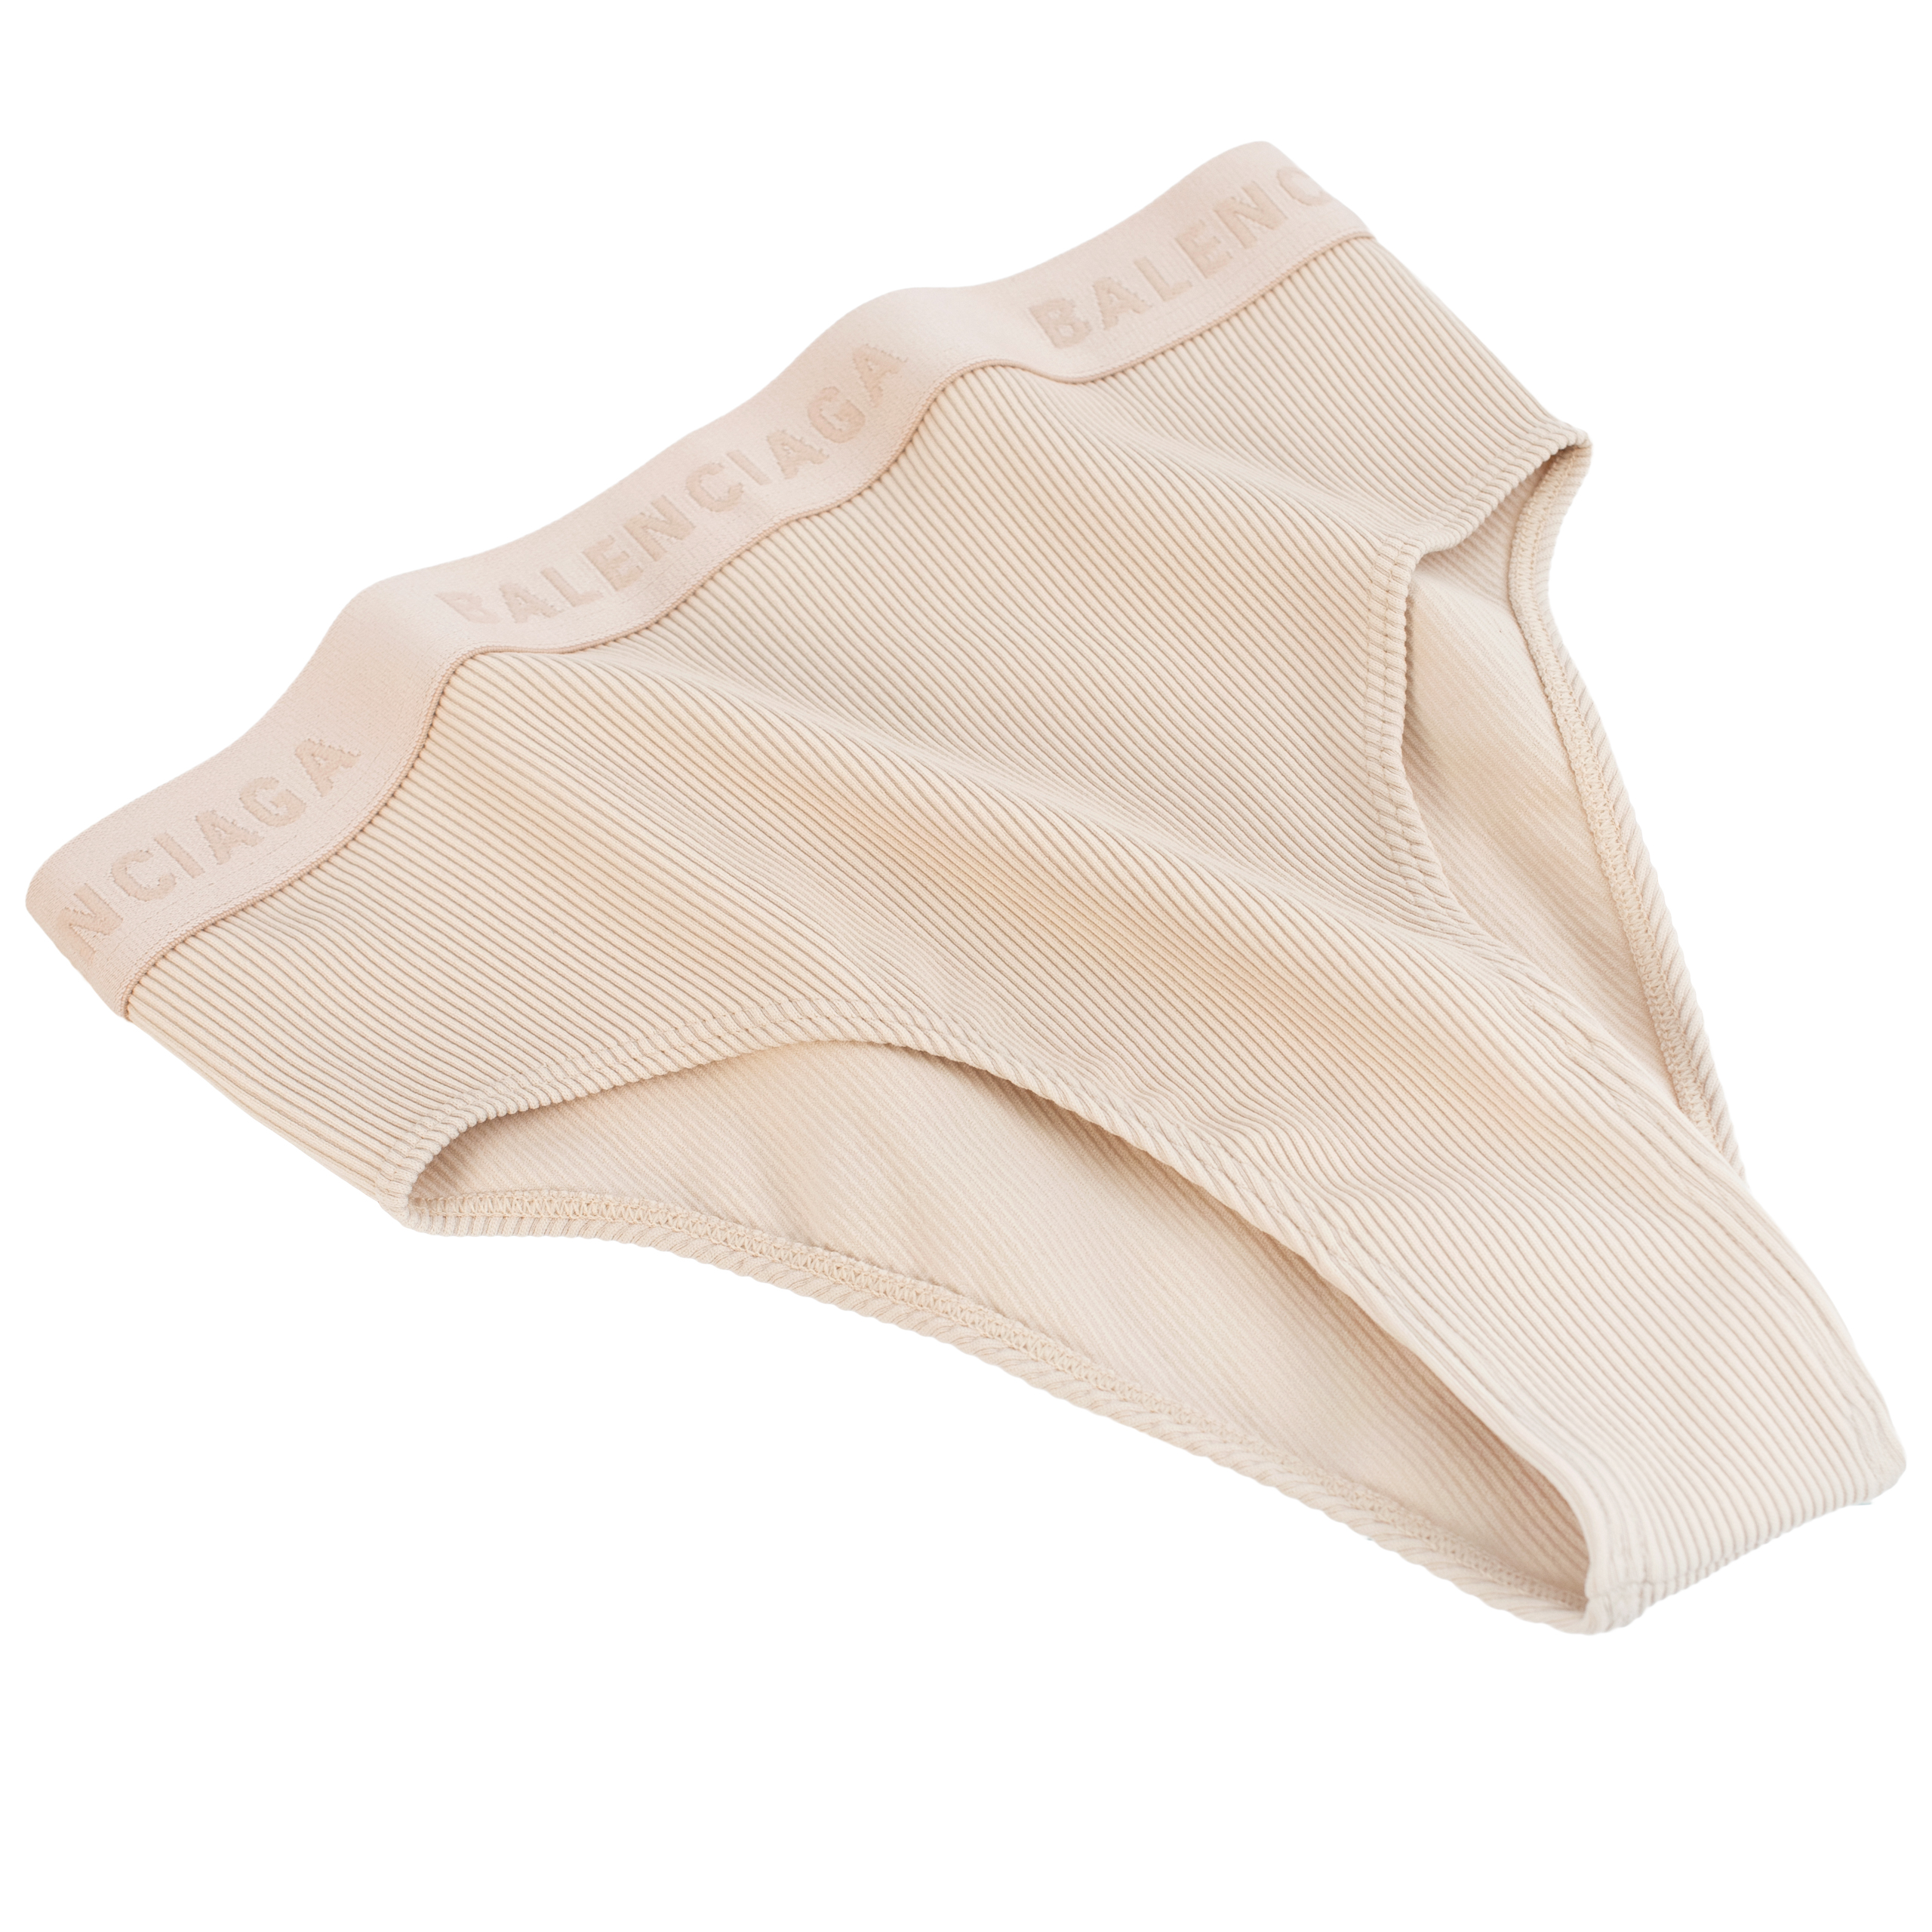 Shop Balenciaga underwear for women online at SV77